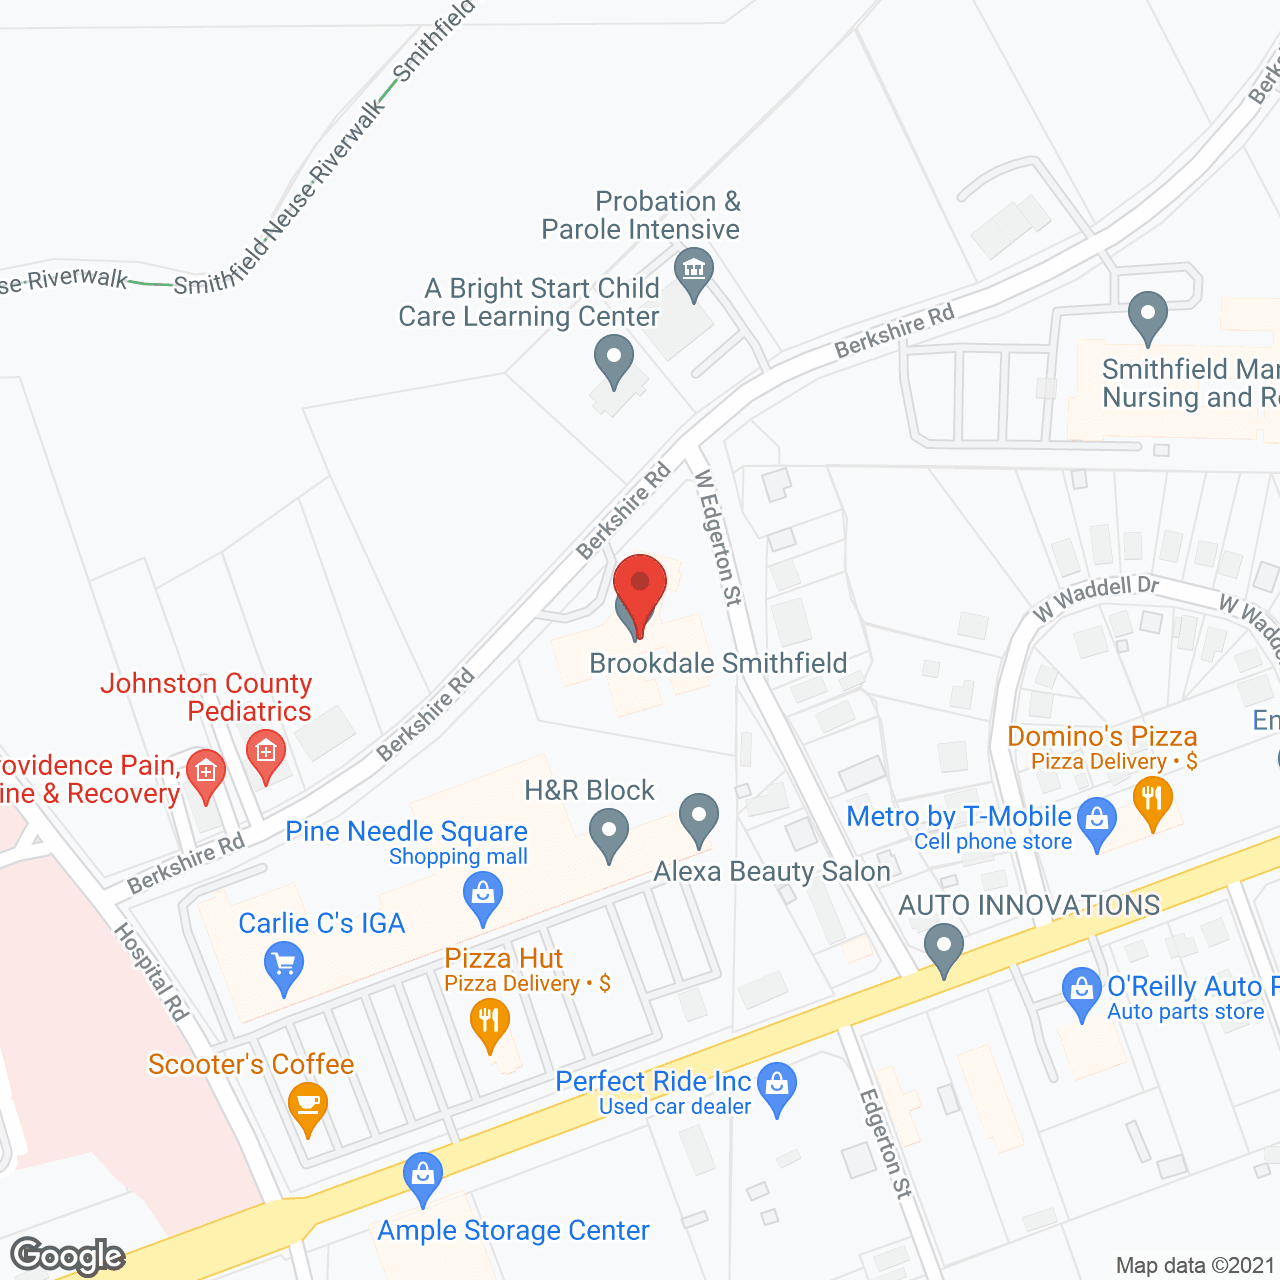 Brookdale Smithfield in google map